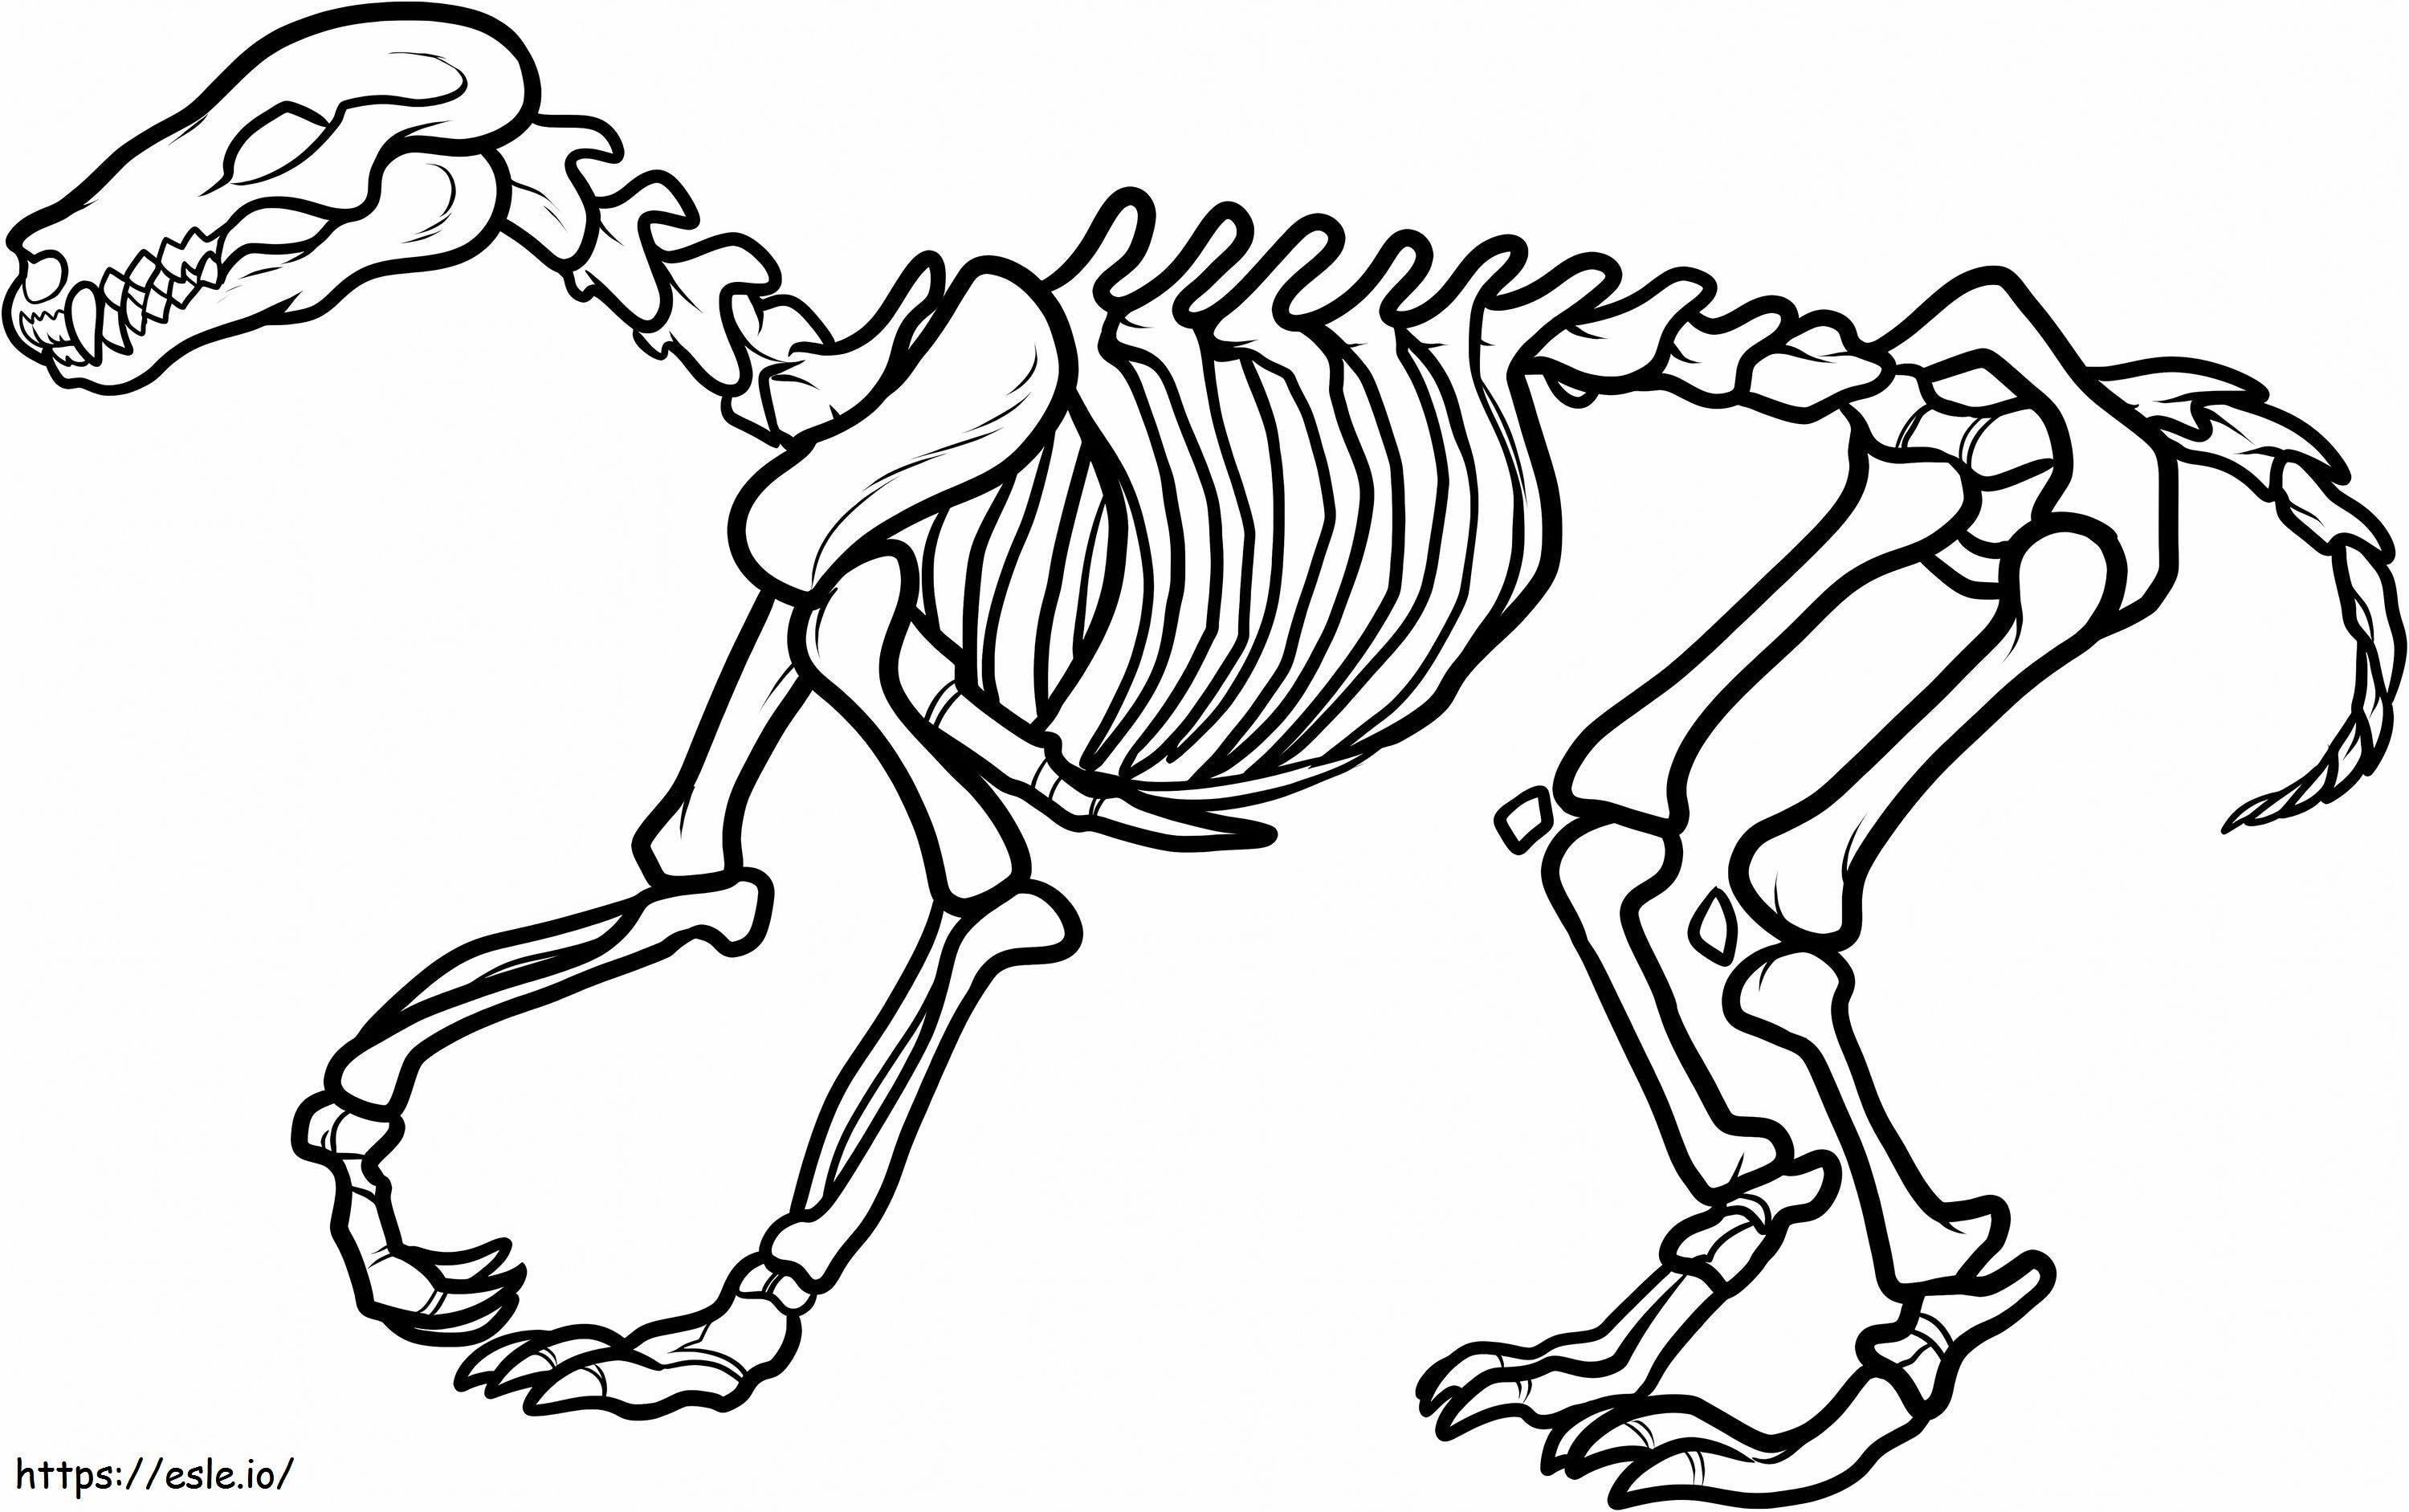 1540353960_Esqueleto de dinosaurio para colorear